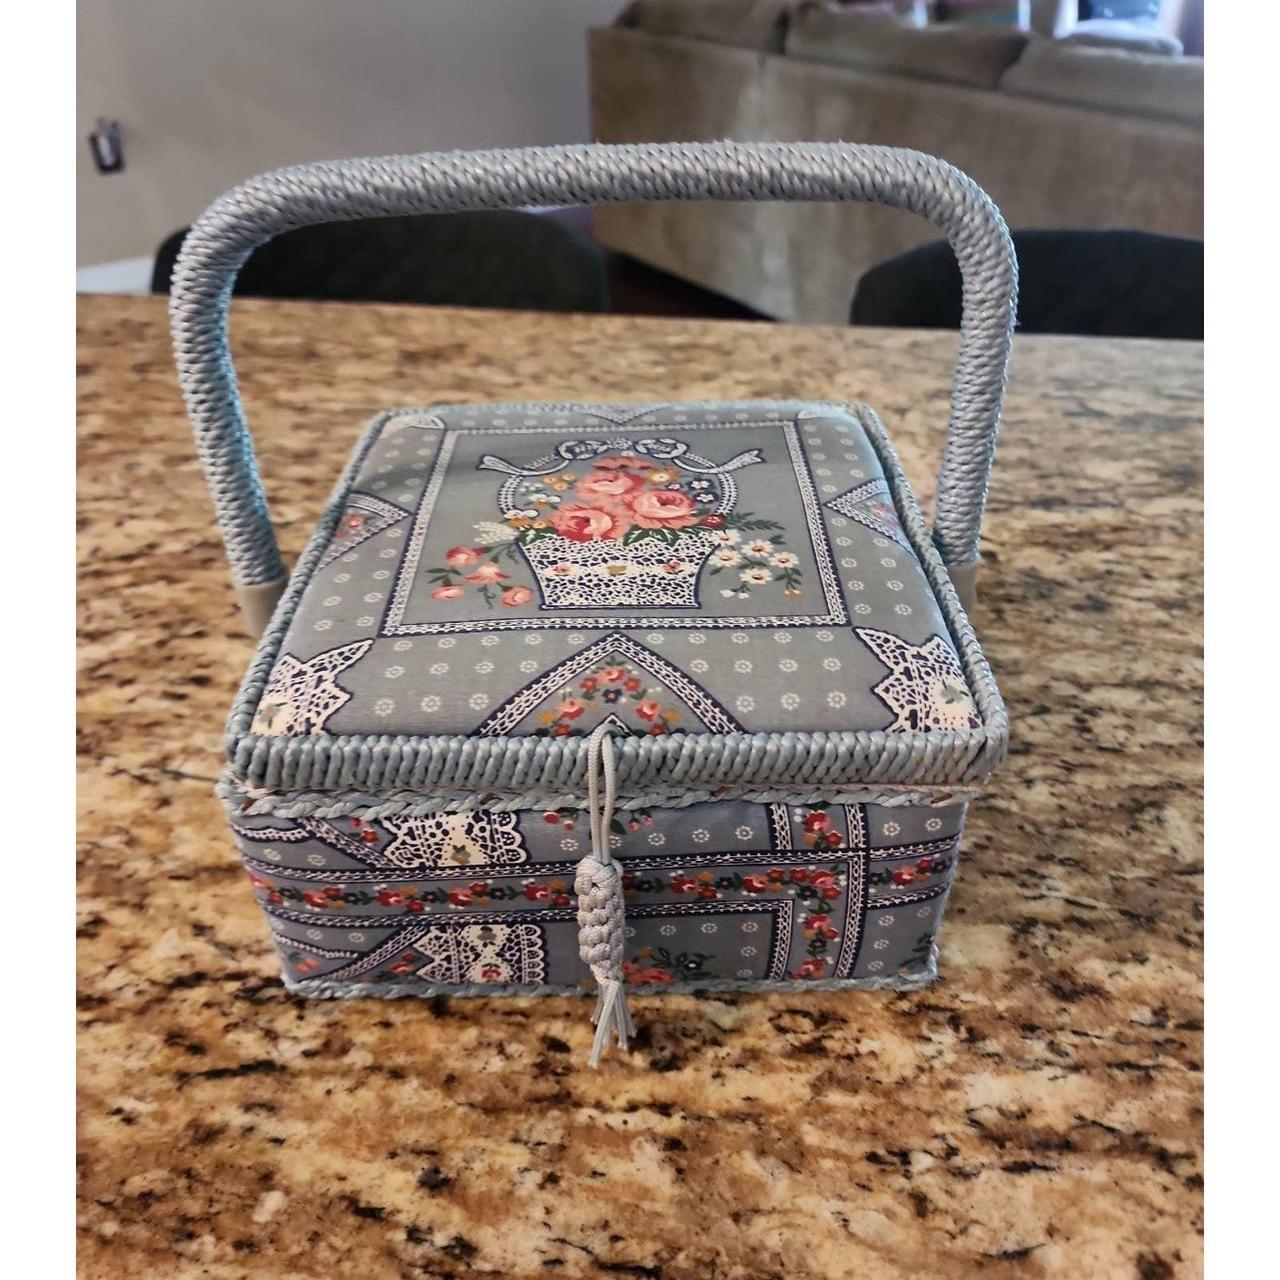 Vintage Sewing Basket Made Exclusively For Singer - Depop